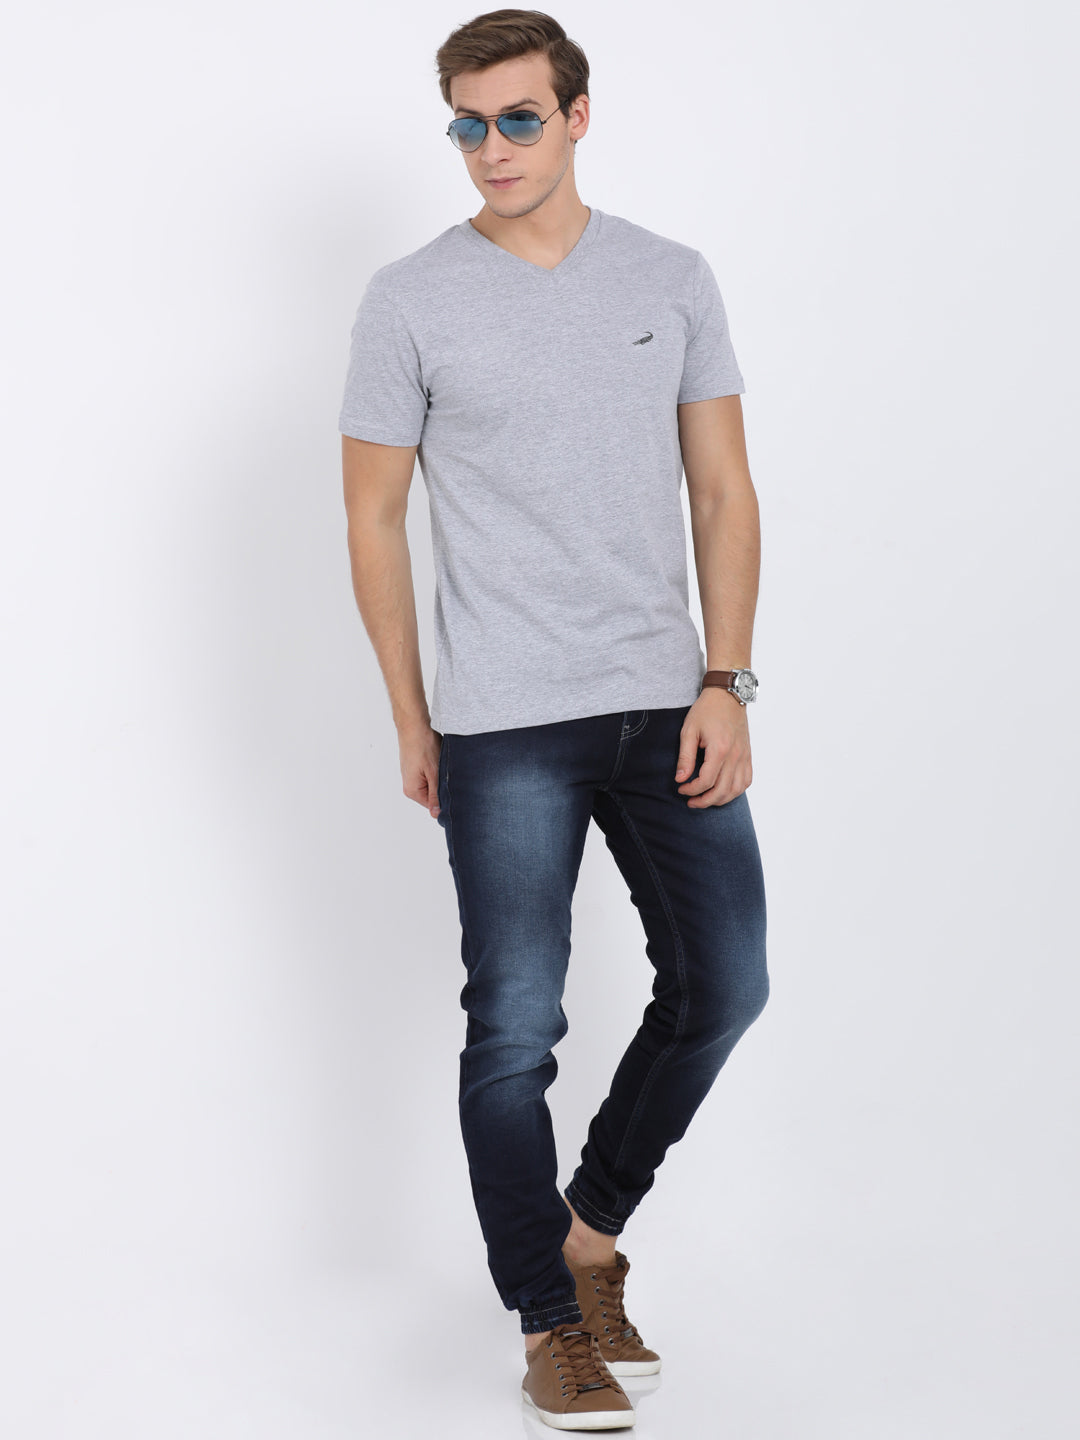 Men's Solid V Neck Half Sleeve Cotton T-Shirt - GREY MELANGE